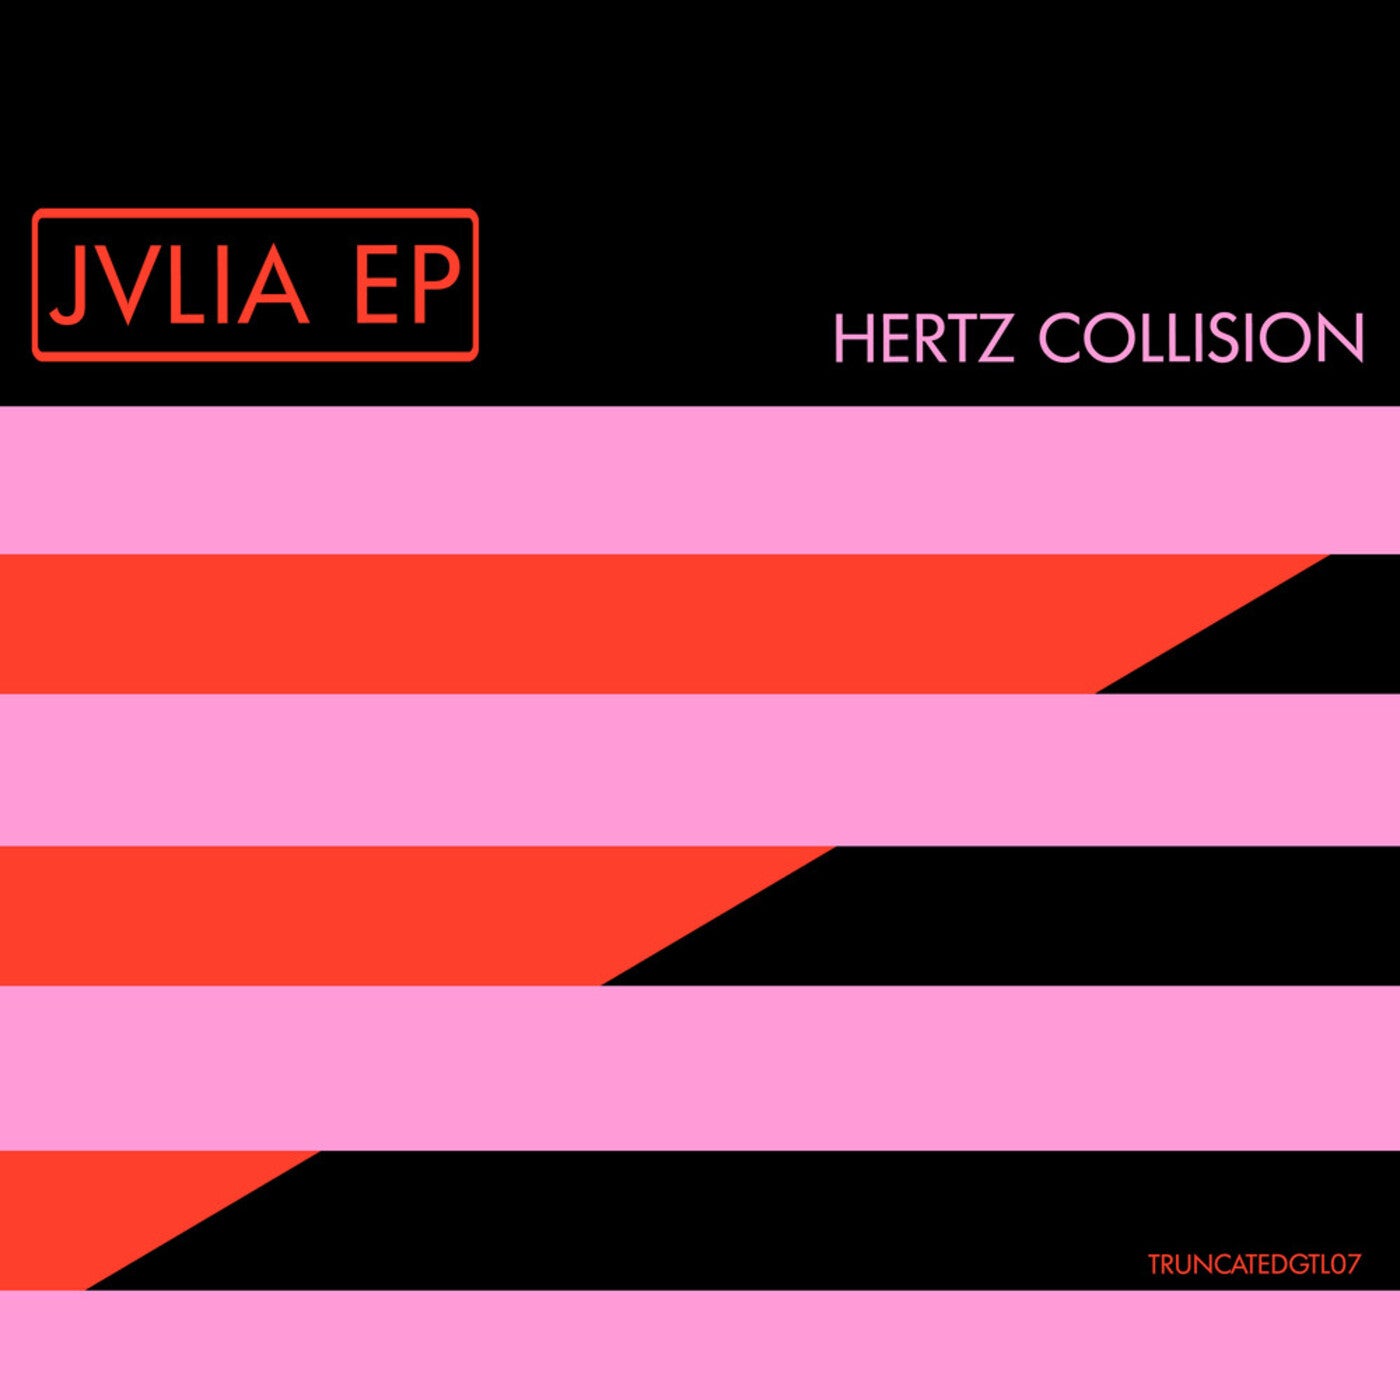 image cover: Hertz Collision - Jvlia / TRUNCATEDGTL07